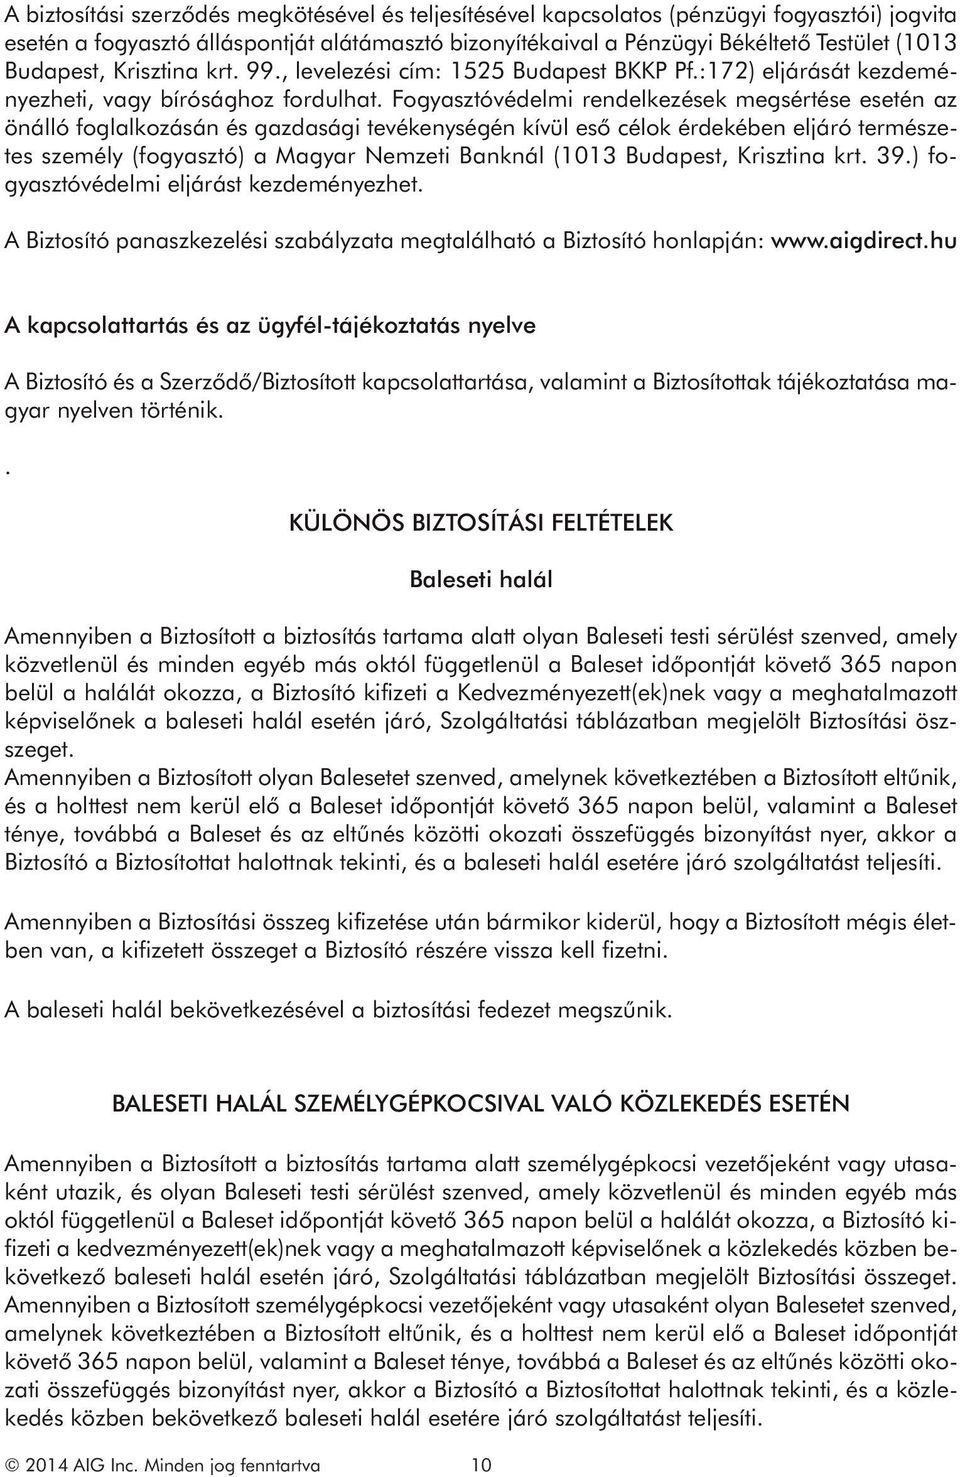 Fogyasztóvédelmi rendelkezések megsértése esetén az önálló foglalkozásán és gazdasági tevékenységén kívül eső célok érdekében eljáró természetes személy (fogyasztó) a Magyar Nemzeti Banknál (1013